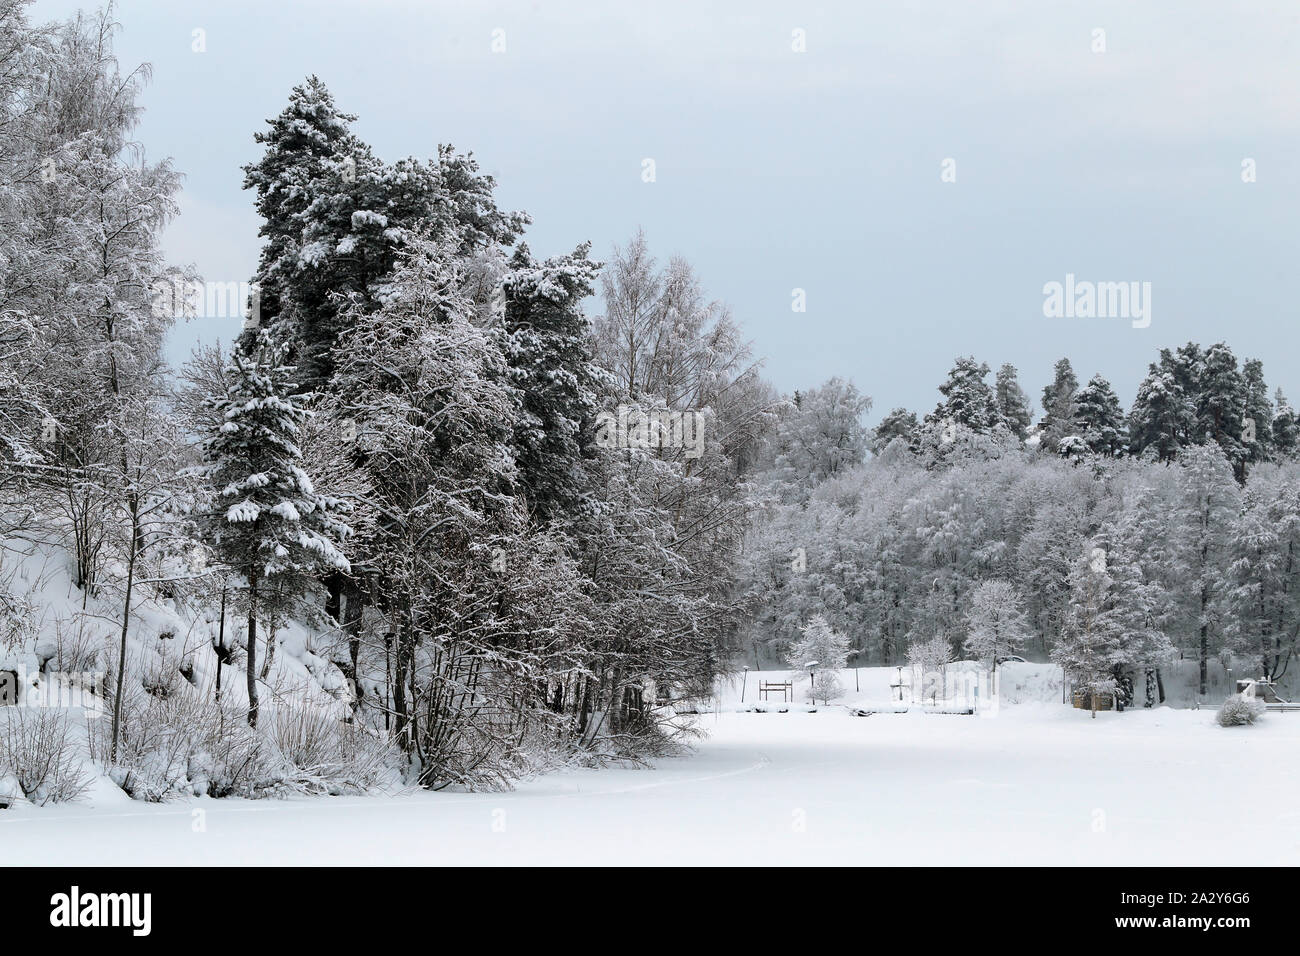 Wald im Winter. Auf diesem Foto können Sie mehrere immergrüne Bäume mit vielen schweren Schnee auf ihren Ästen sehen. Viel Schnee auf dem Boden zu. Stockfoto